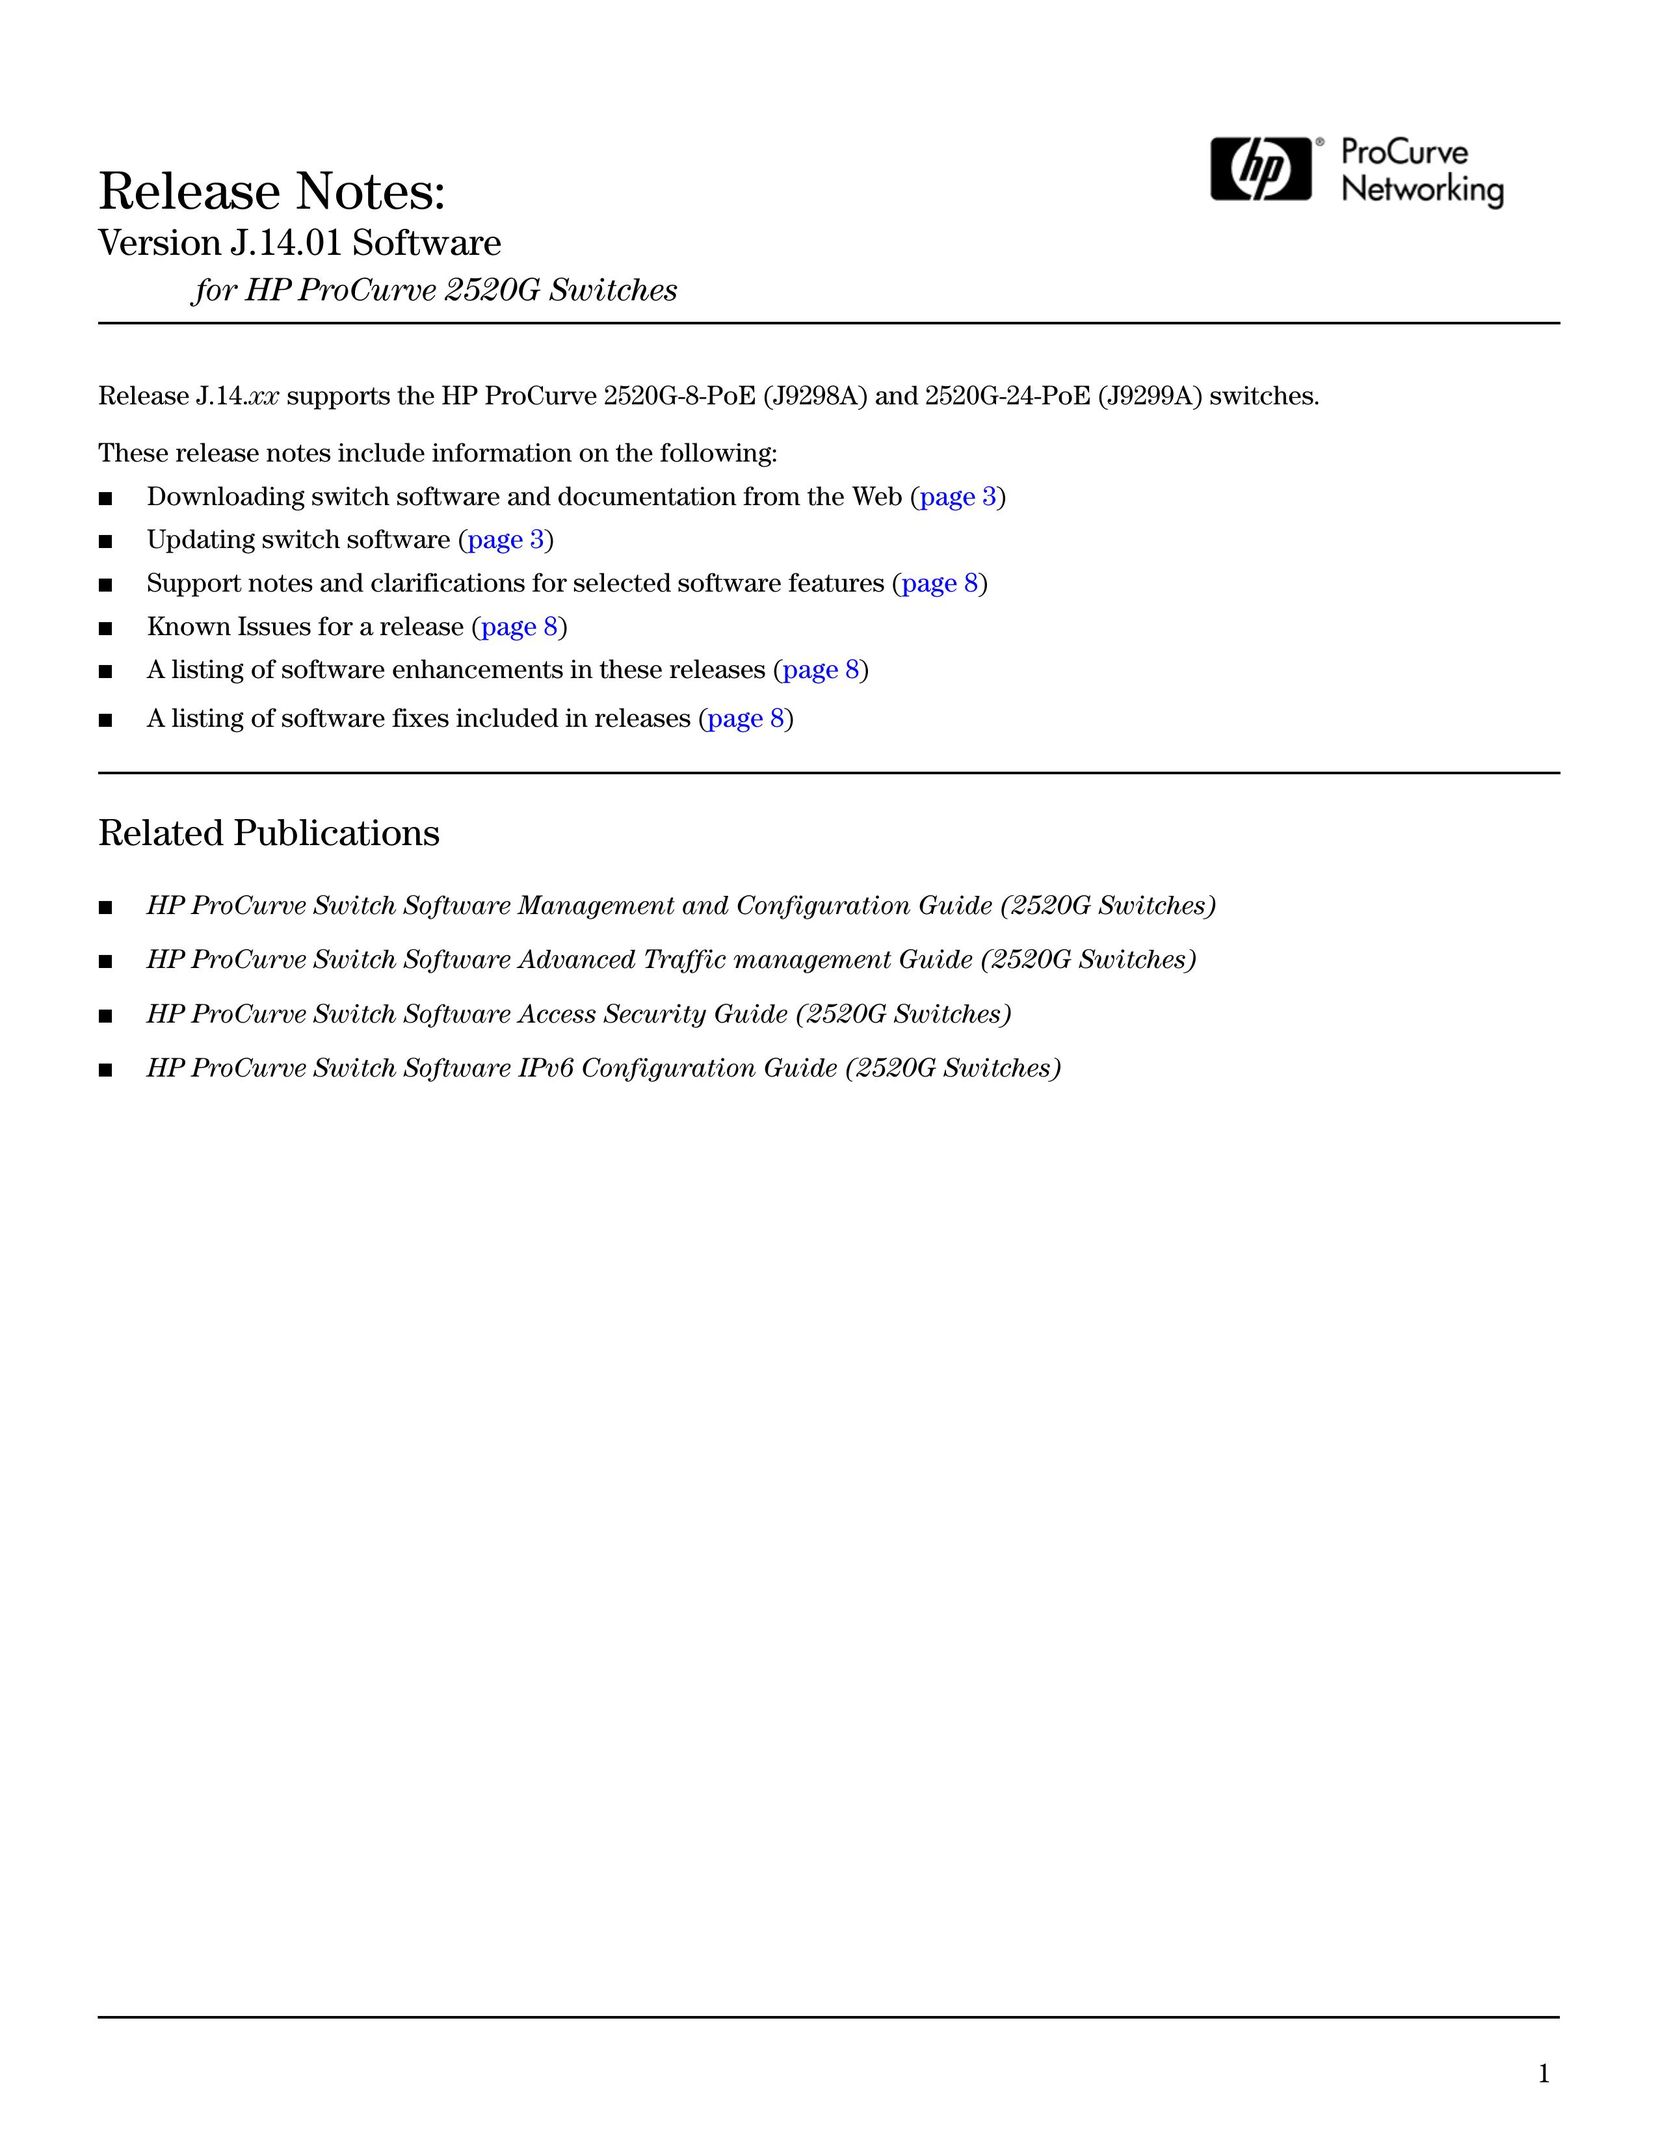 HP (Hewlett-Packard) 2520G Switch User Manual